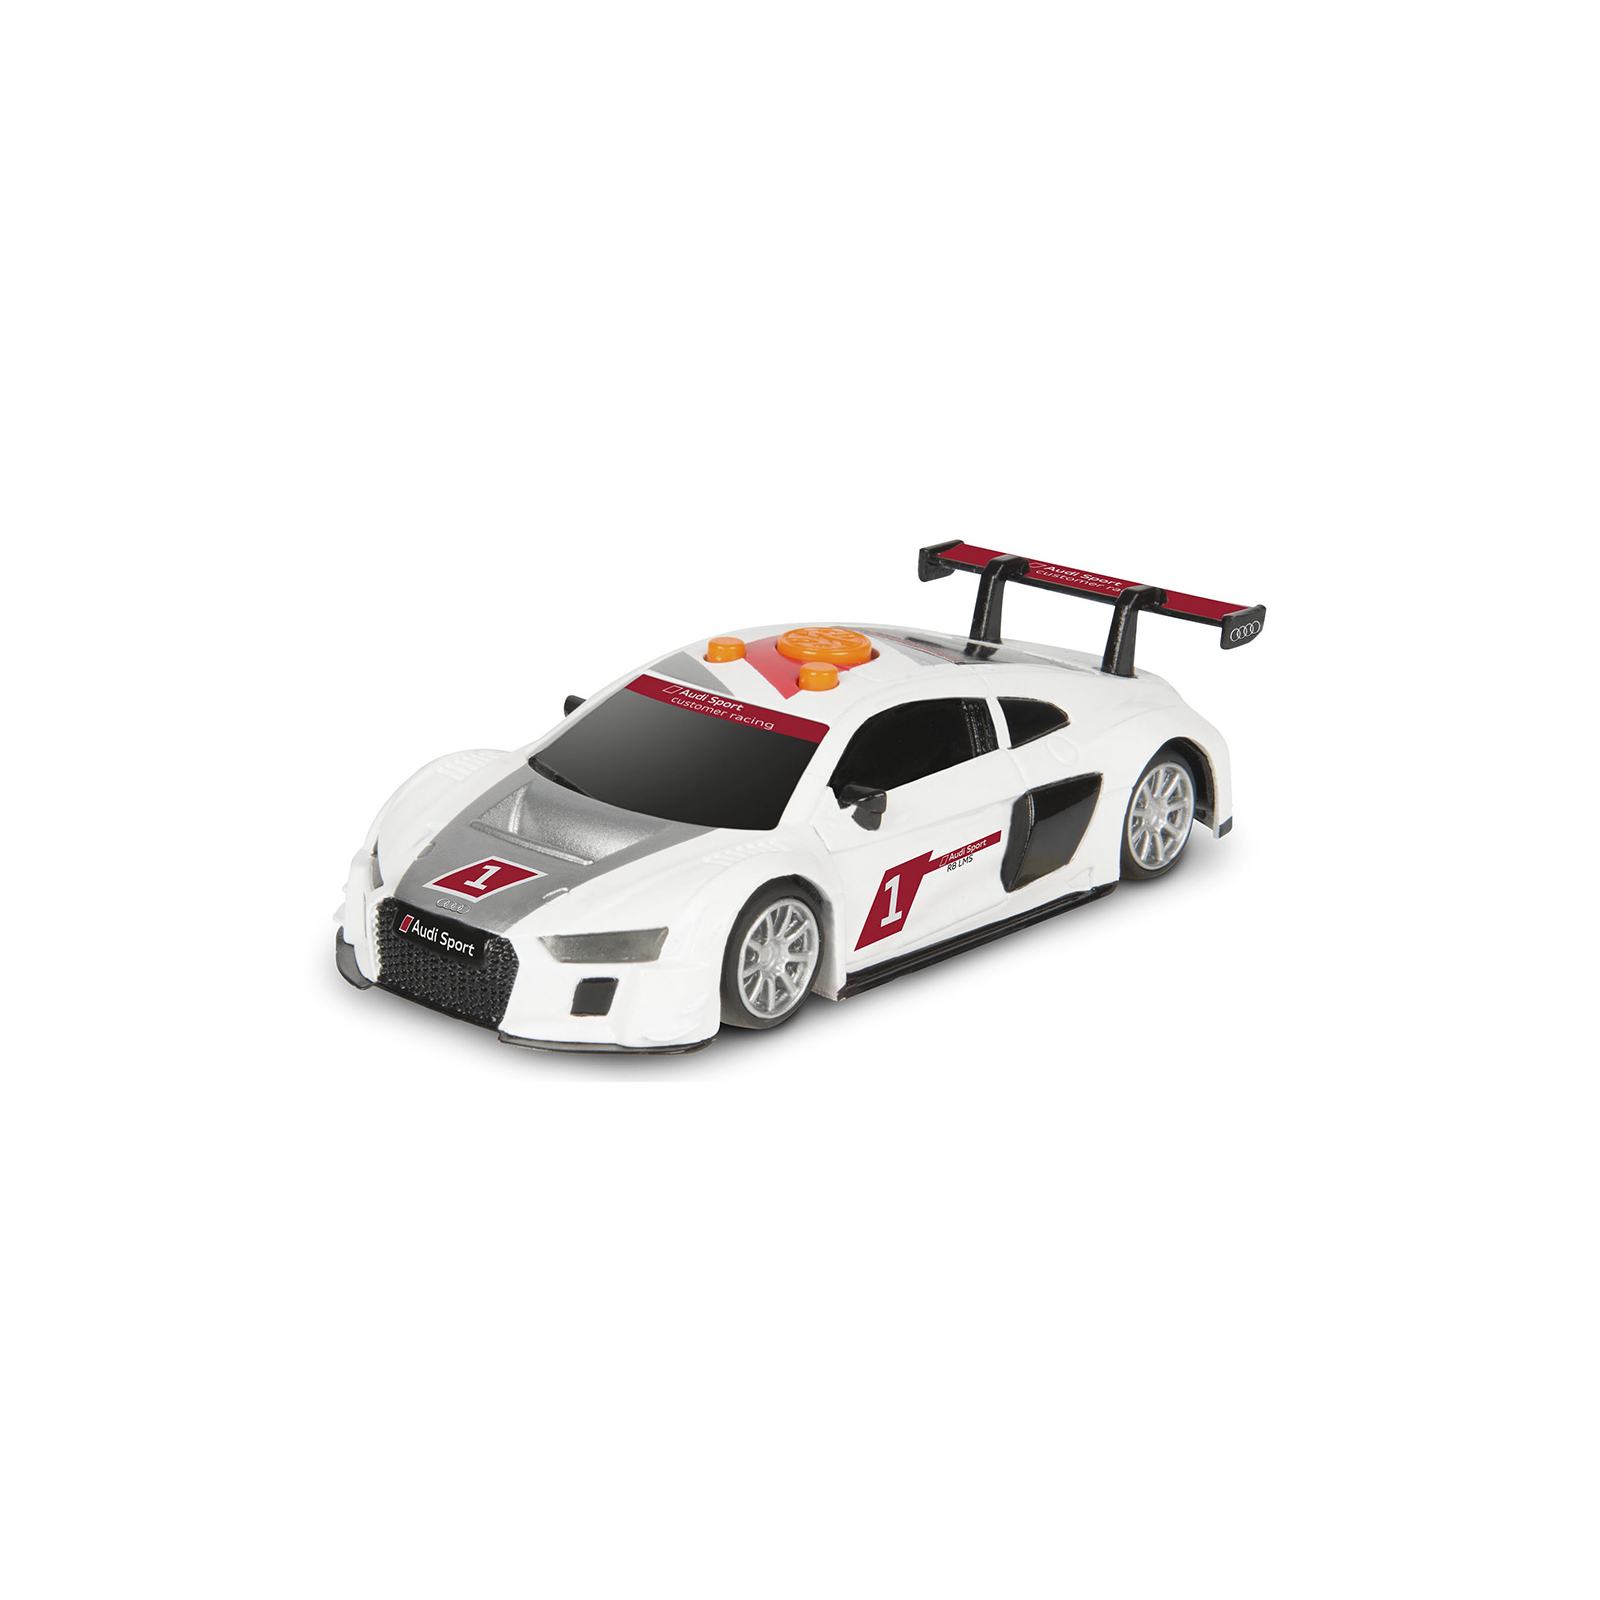 Радиоуправляемая игрушка Toy State Крутые рейсеры Audi R8 LMS 15 см (21728)